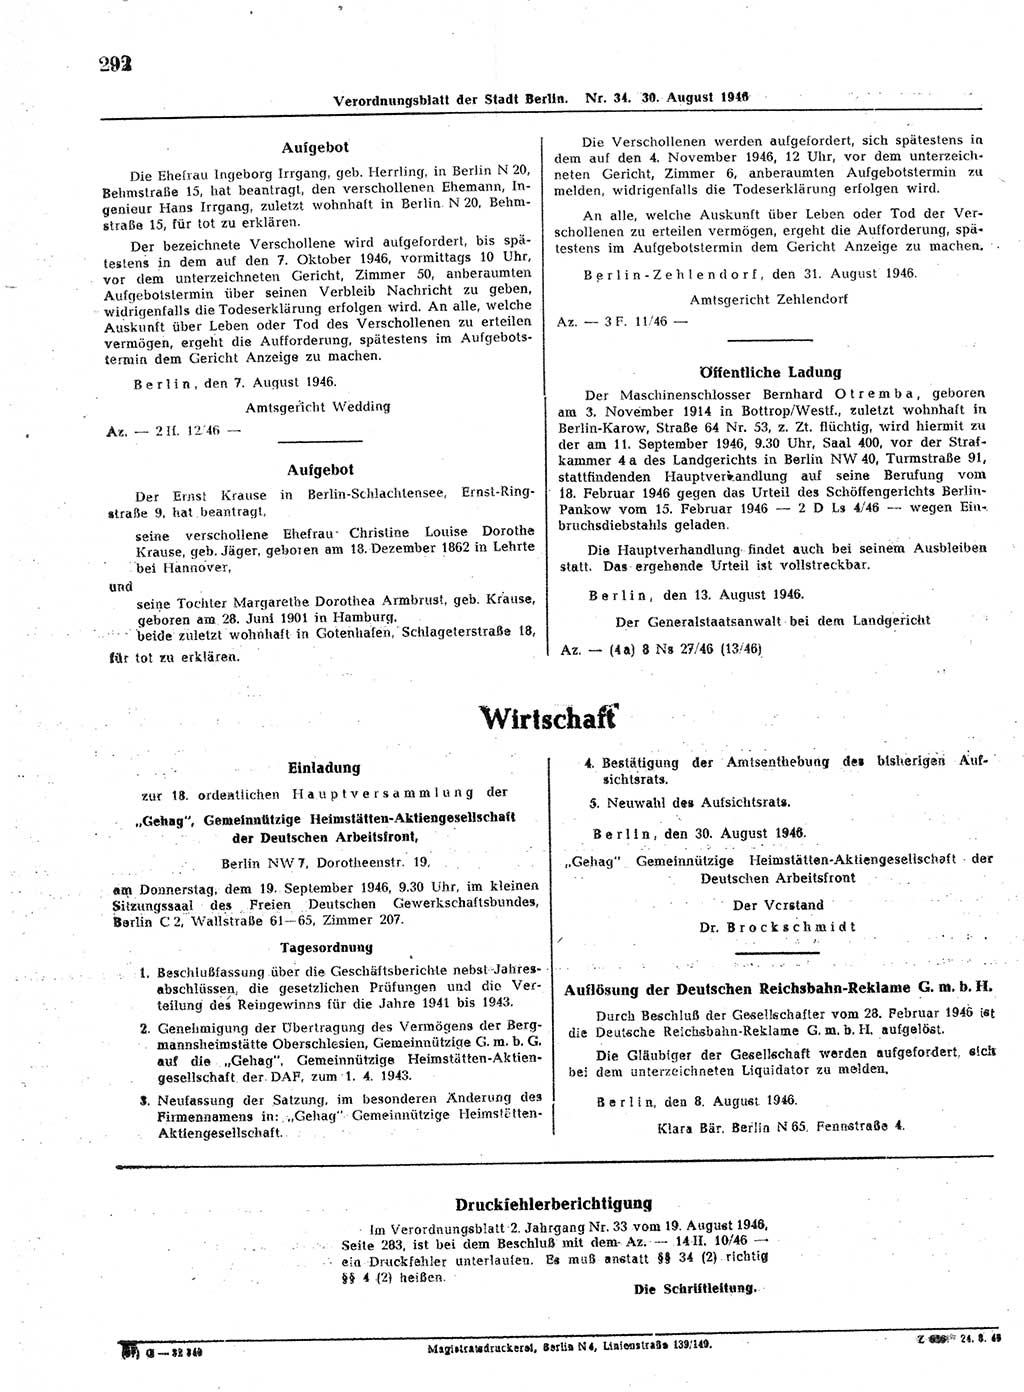 Verordnungsblatt (VOBl.) der Stadt Berlin, für Groß-Berlin 1946, Seite 292 (VOBl. Bln. 1946, S. 292)